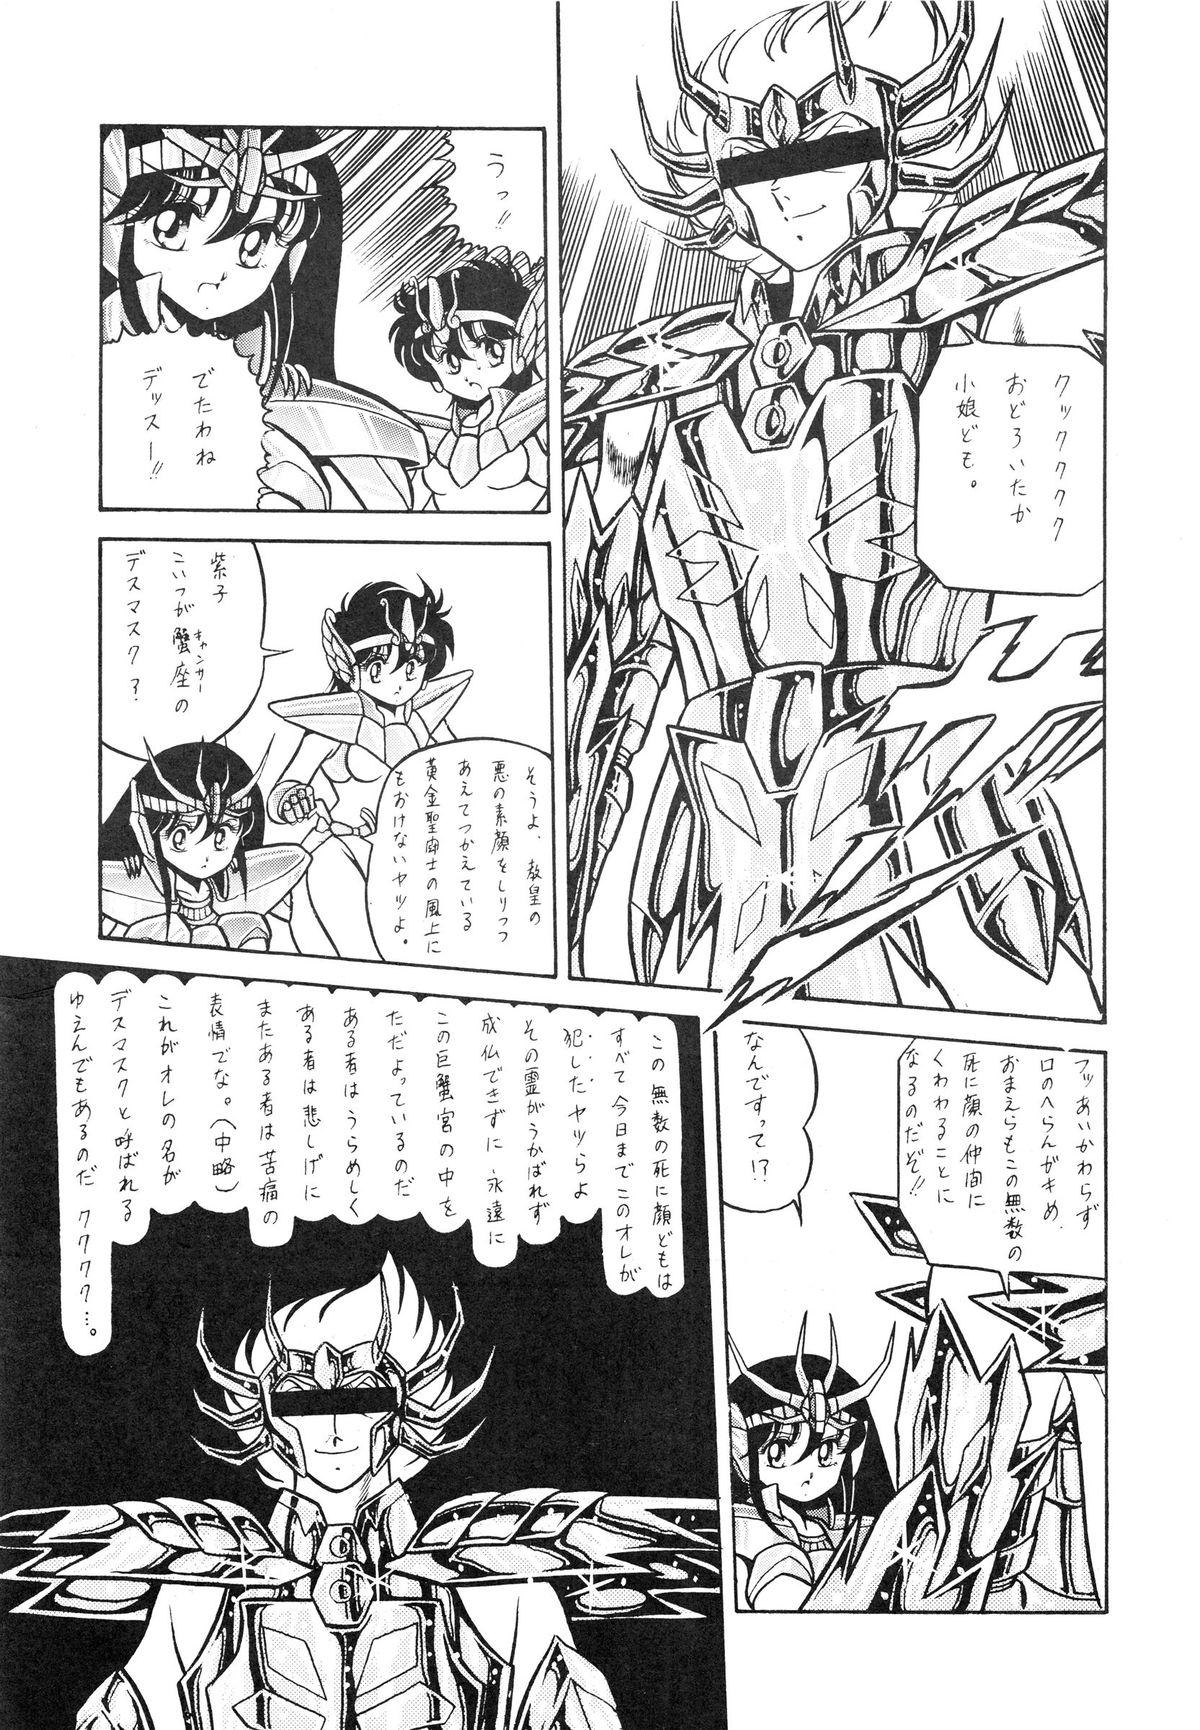 Saint Seiko Vol. 1 Juuni Shikyuu Densetsu no Maki 28